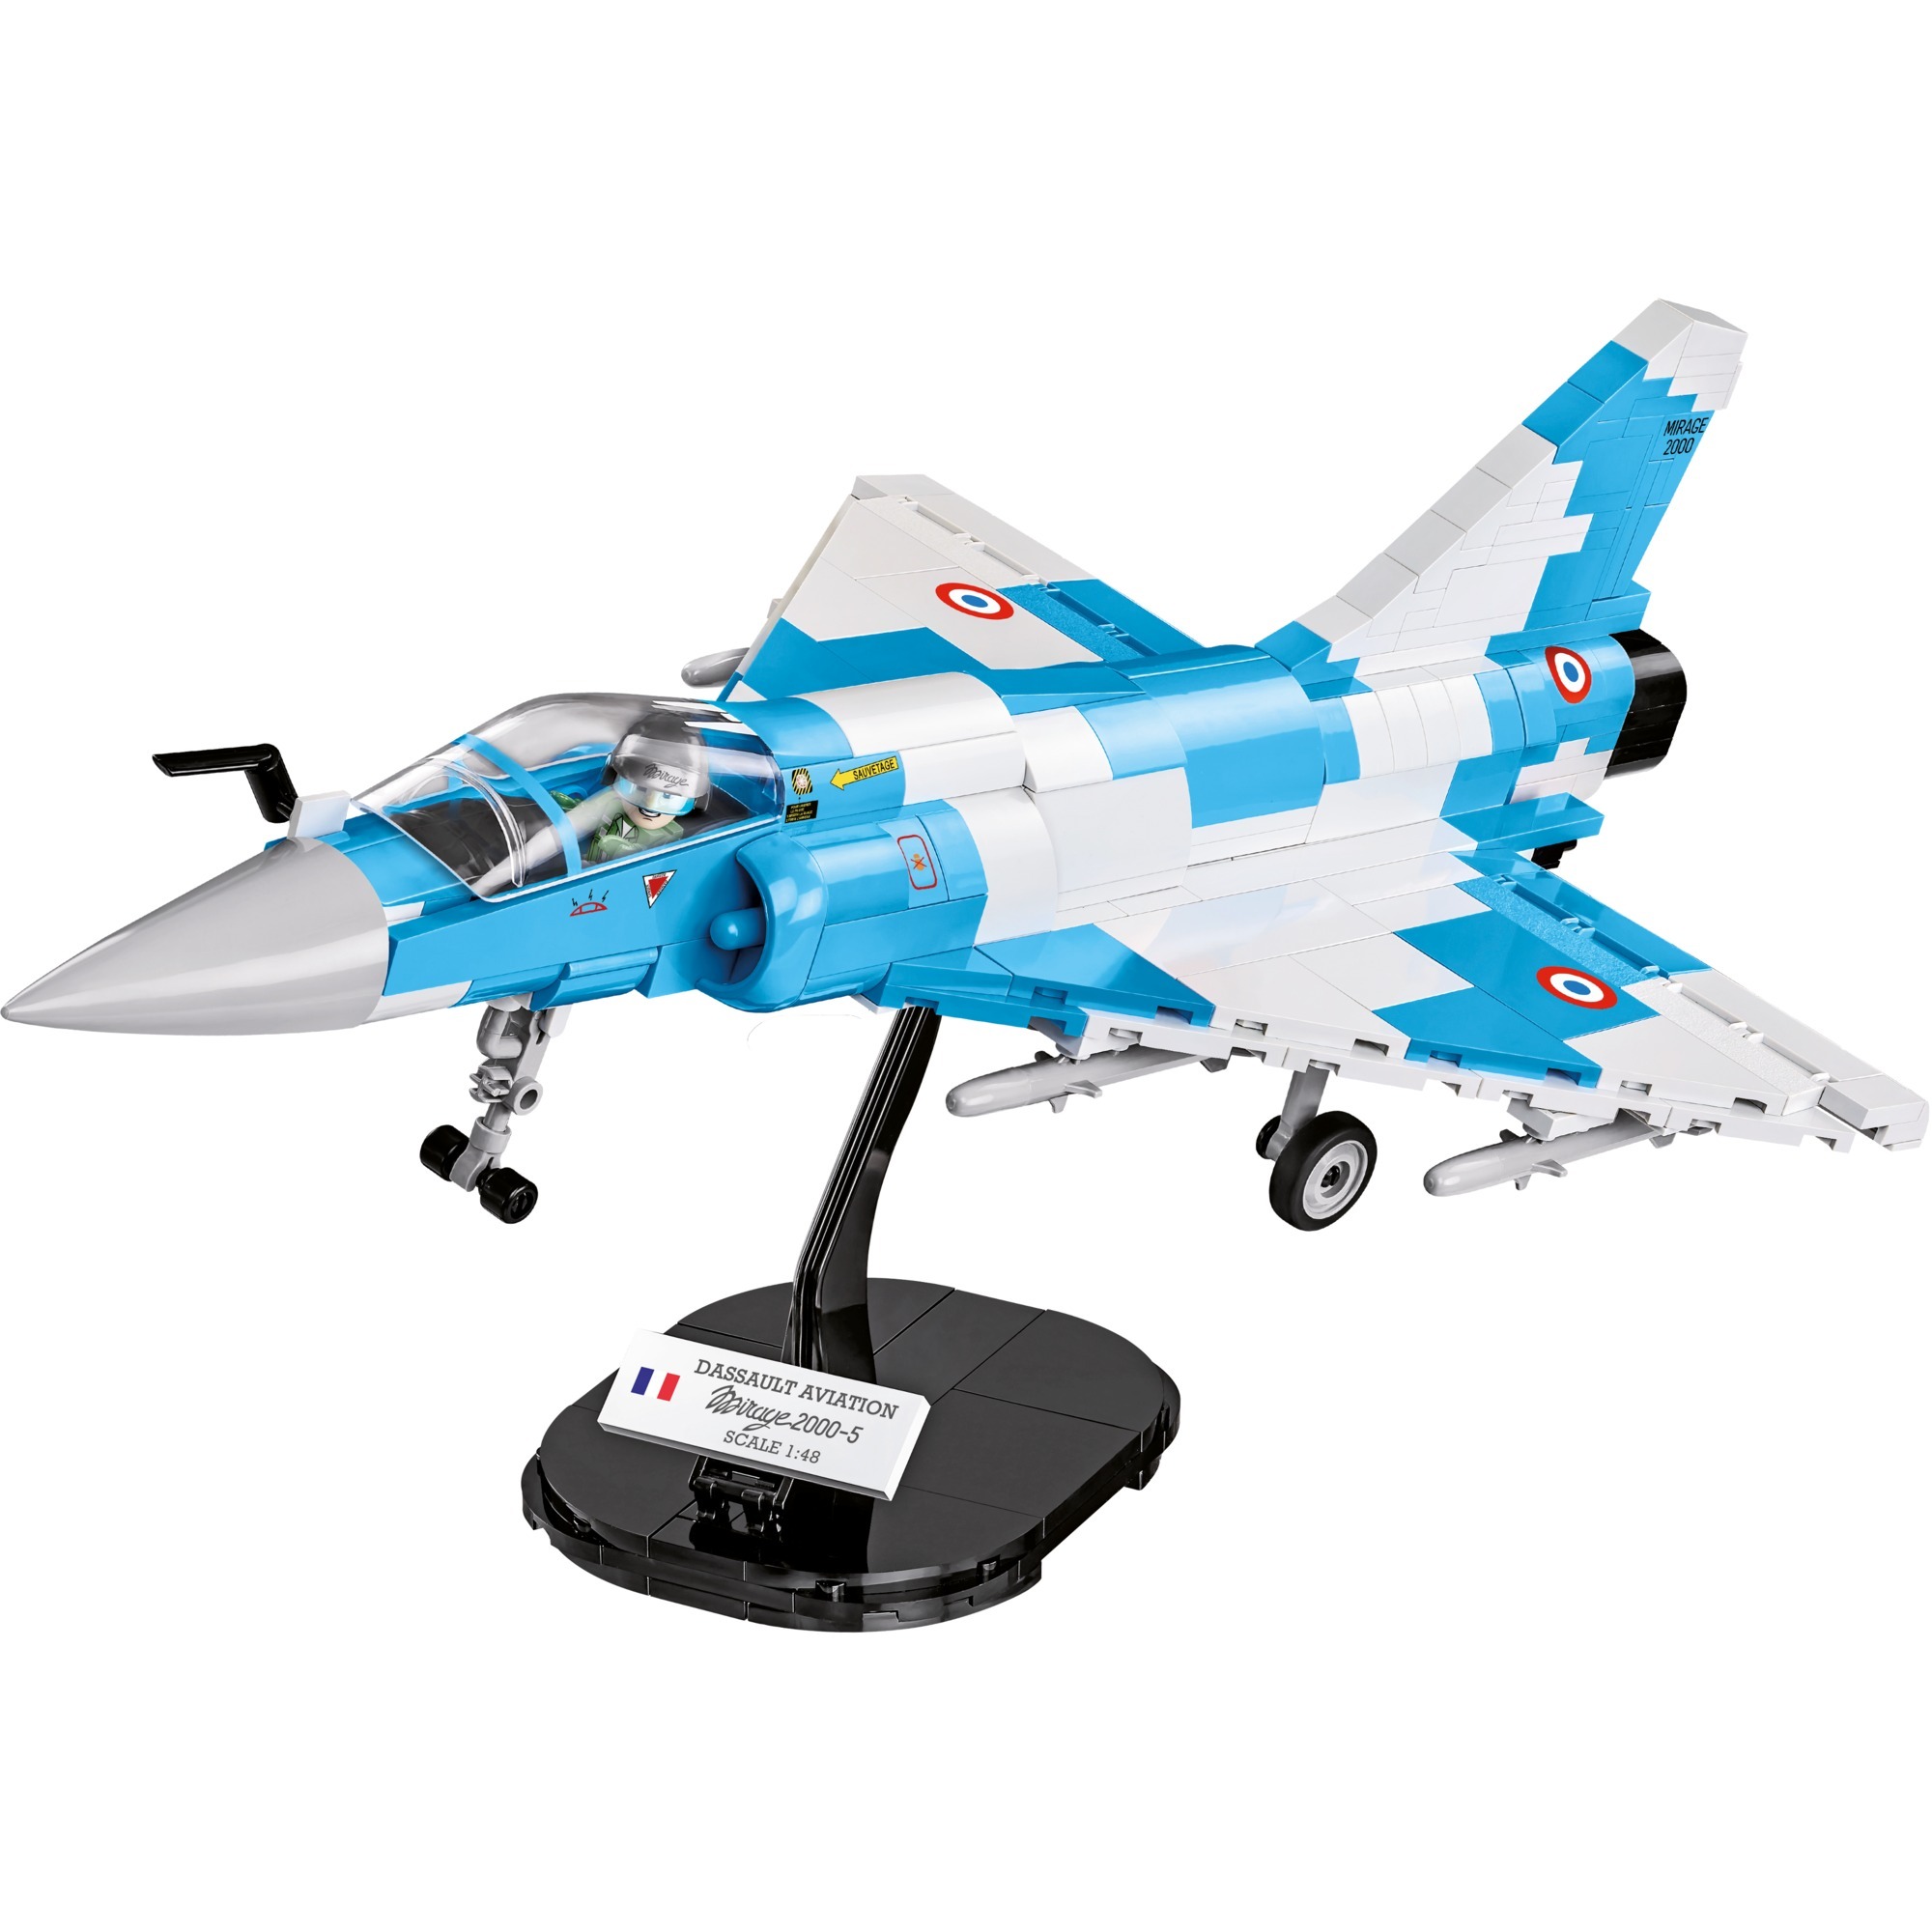 Image of Alternate - Armed Forces Mirage 2000-5, Konstruktionsspielzeug online einkaufen bei Alternate